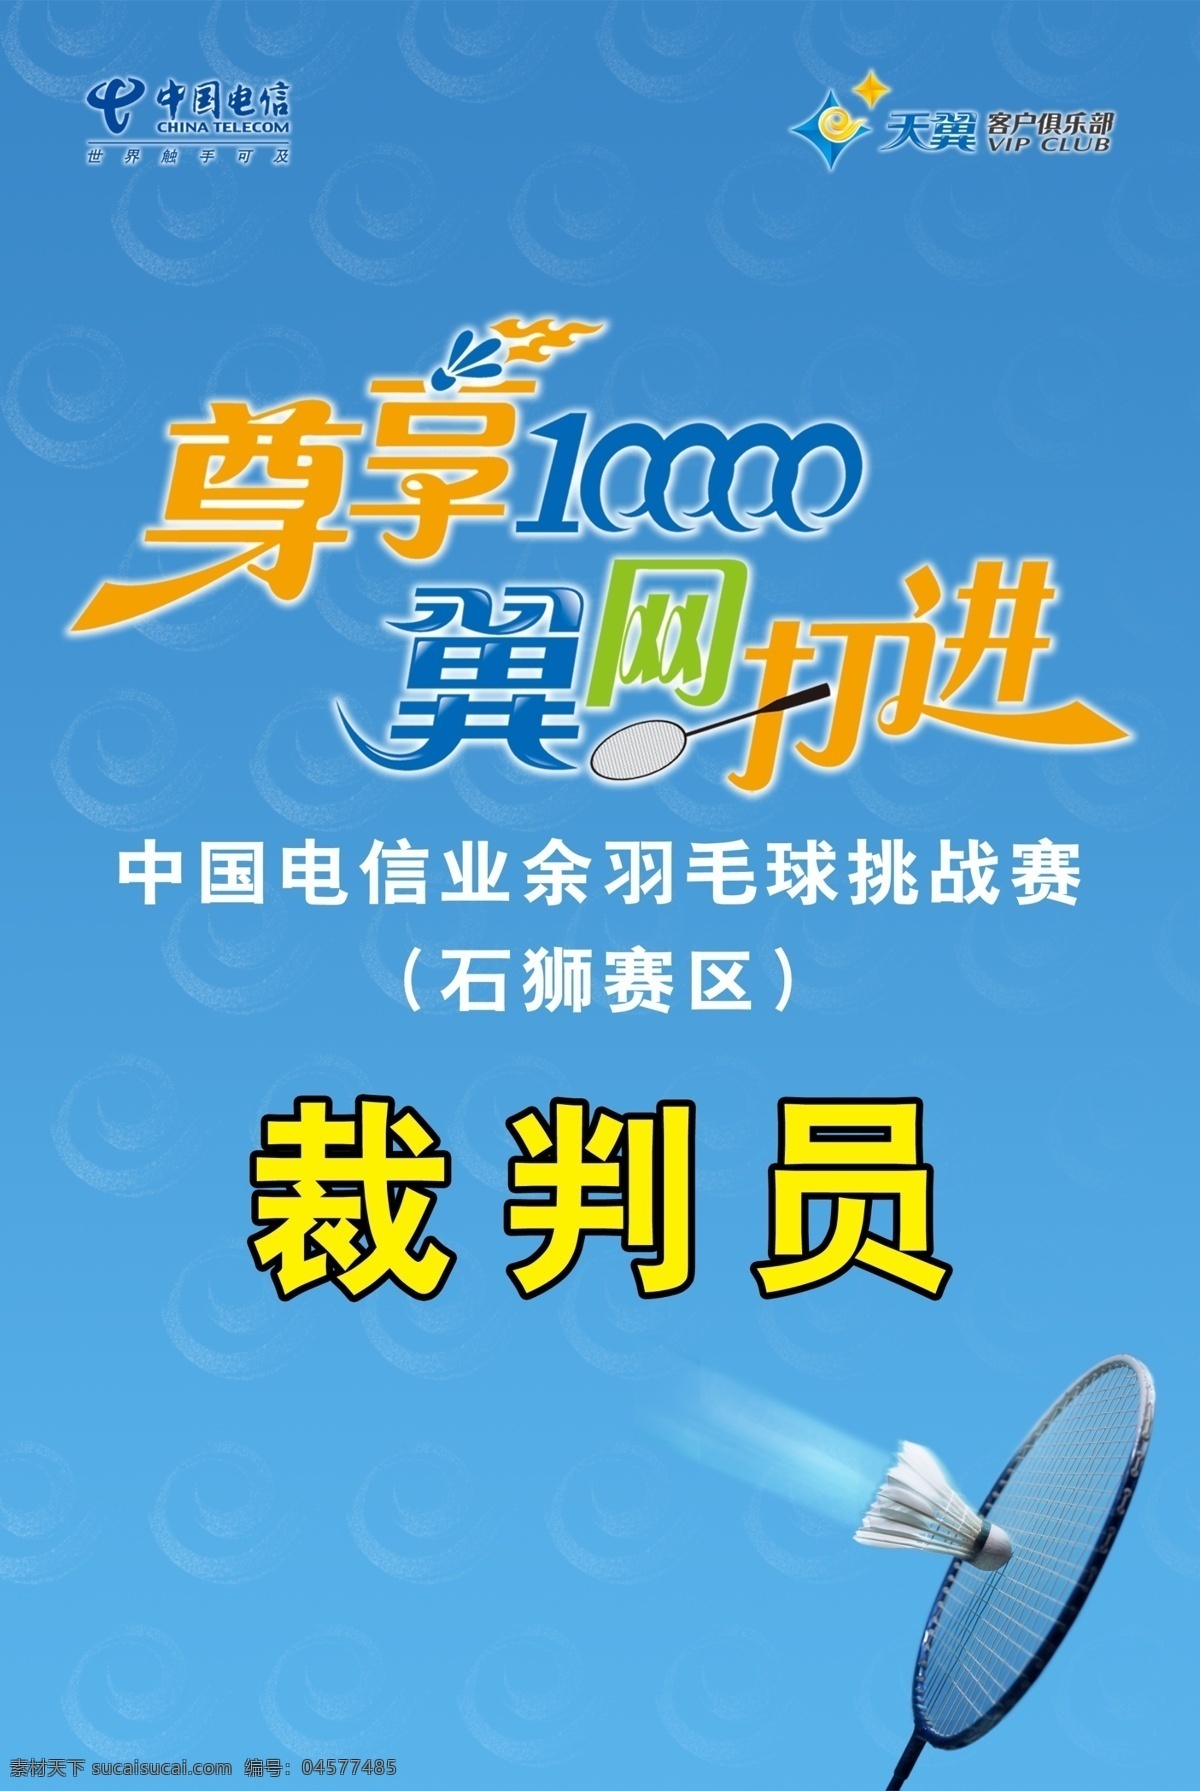 广告设计模板 蓝色 球拍 羽毛球 羽毛球比赛 源文件 中国电信 天翼 客户 俱乐部 尊 享 10000 翼网打进 业余 比赛 其他海报设计